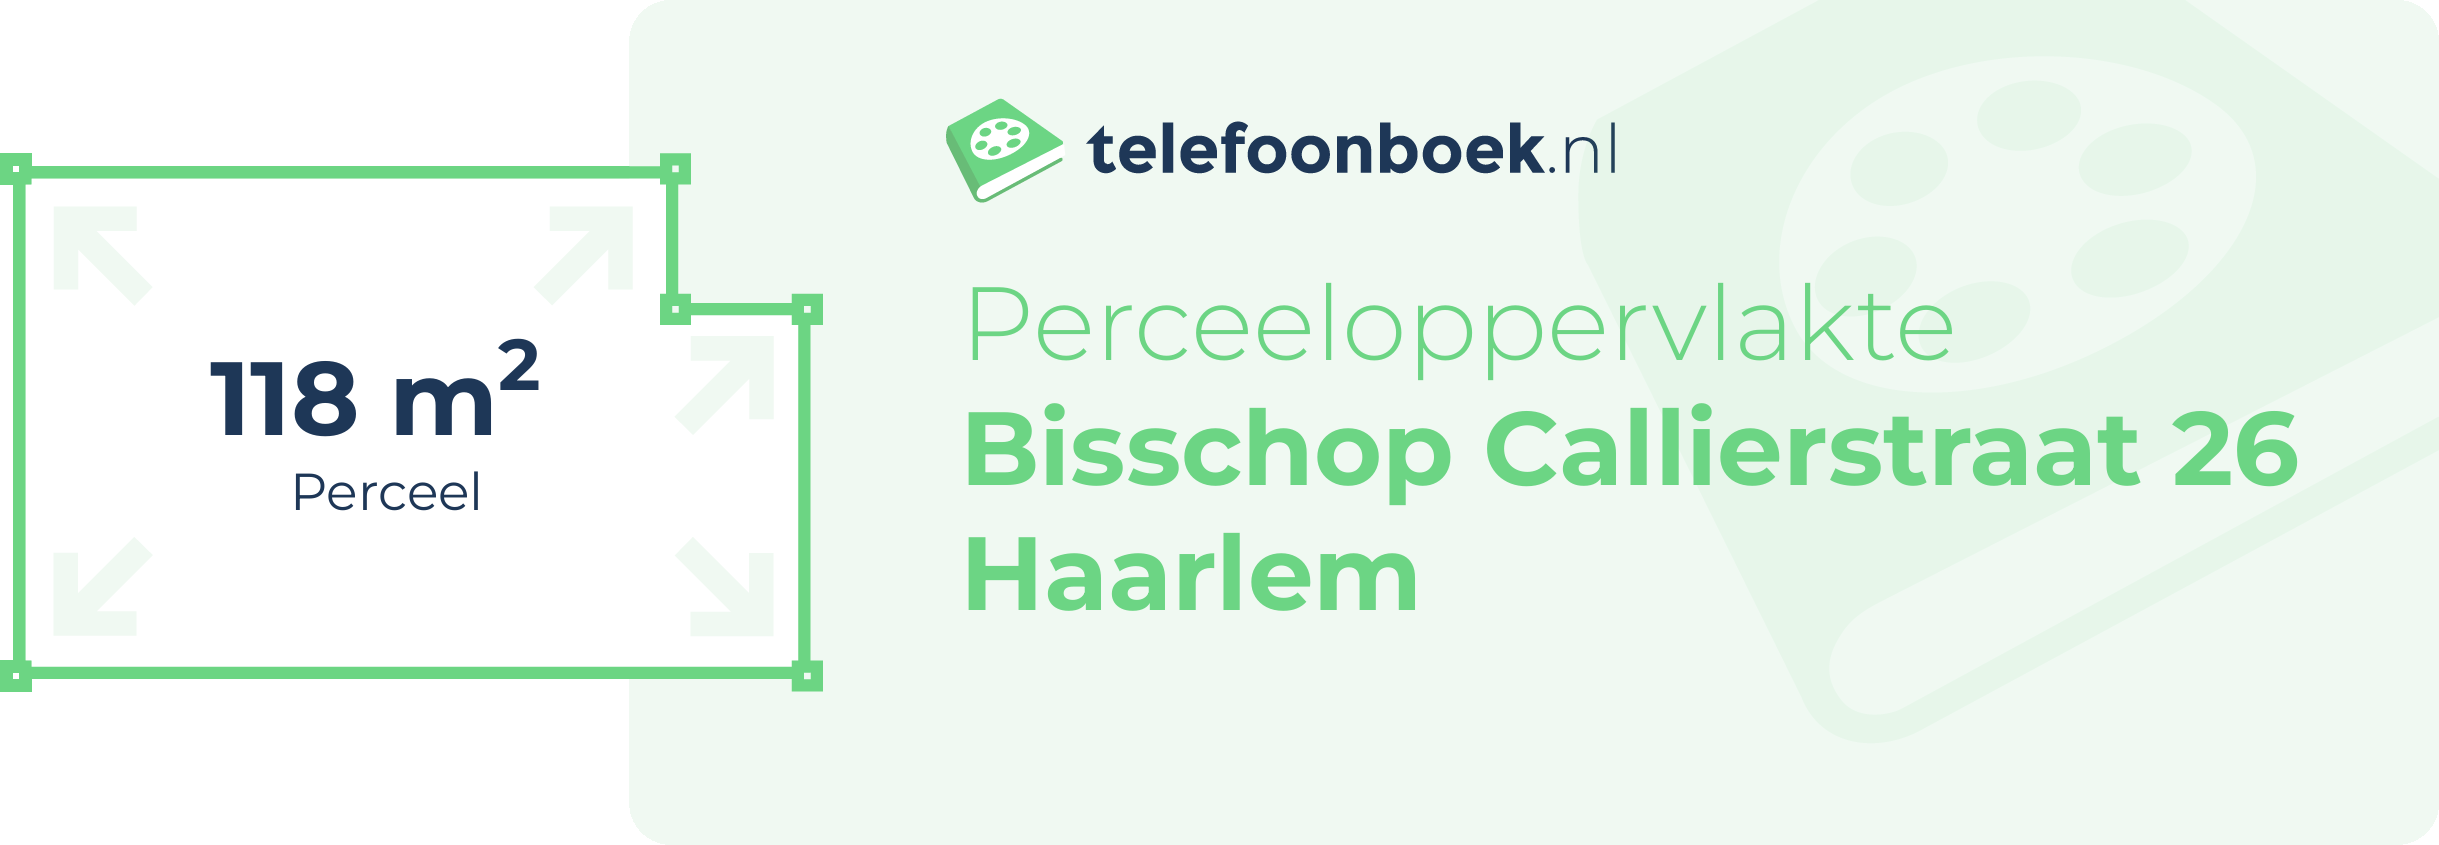 Perceeloppervlakte Bisschop Callierstraat 26 Haarlem